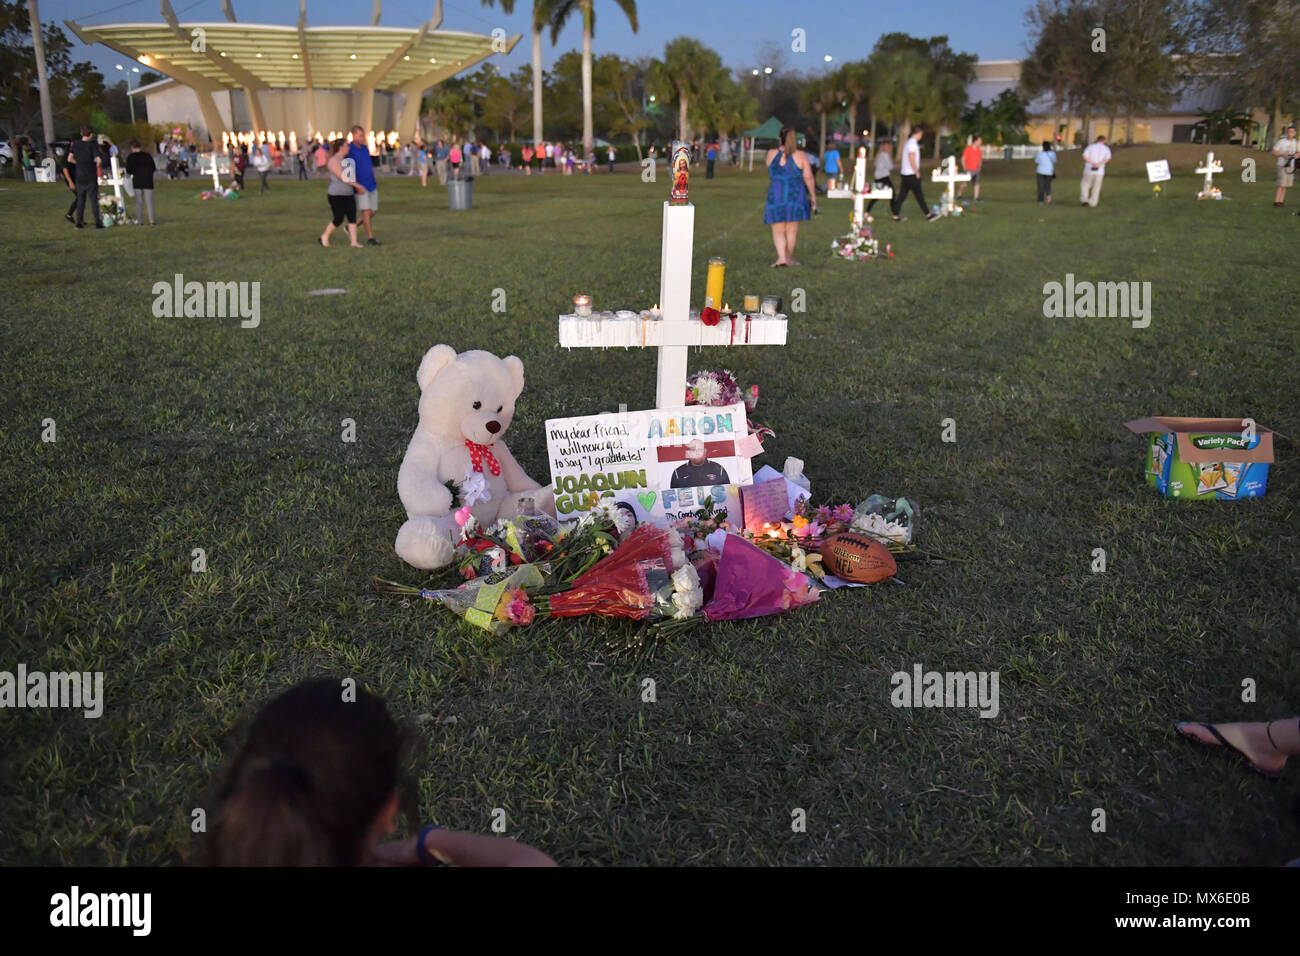 Parc, FL - 16 février : une jeune femme met des fleurs sur un mémorial qui honore les victimes de la prise de masse à l'école secondaire Marjory Stoneman Douglas, à Pine Trail Park le 16 février 2018 dans un parc, en Floride. La police a arrêté 19 ans, ancien élève Nikolas Cruz pour avoir tué 17 personnes à l'école secondaire. Personnes : Atmosphère Banque D'Images